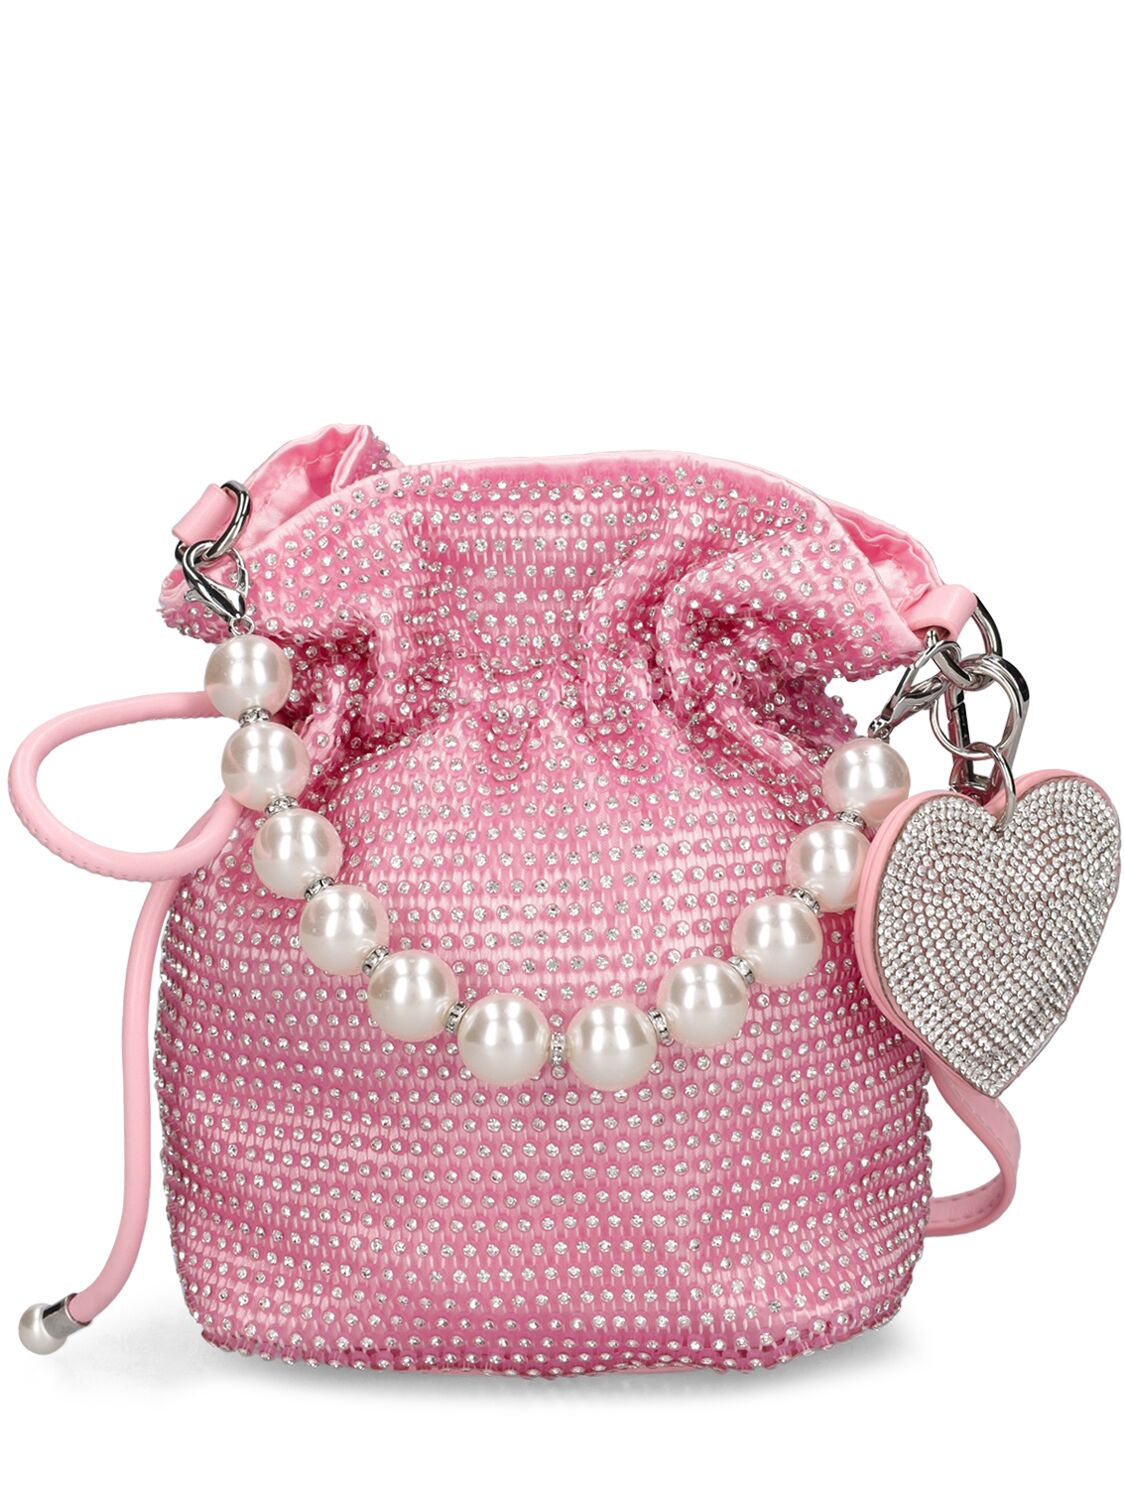 Image of Crystal Embellished Bag